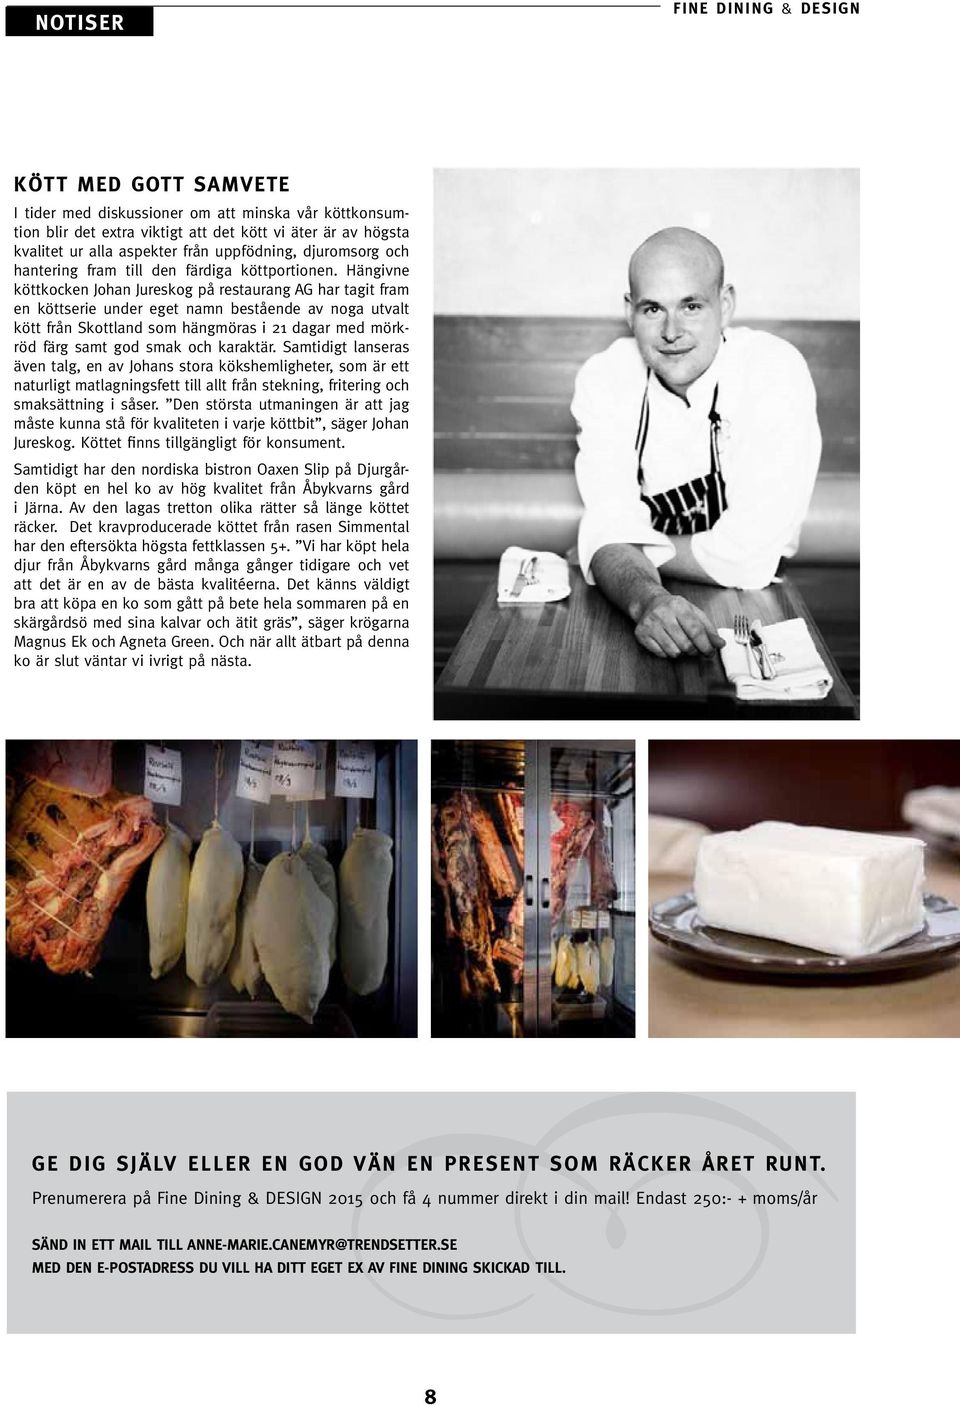 Hängivne köttkocken Johan Jureskog på restaurang AG har tagit fram en köttserie under eget namn bestående av noga utvalt kött från Skottland som hängmöras i 21 dagar med mörkröd färg samt god smak